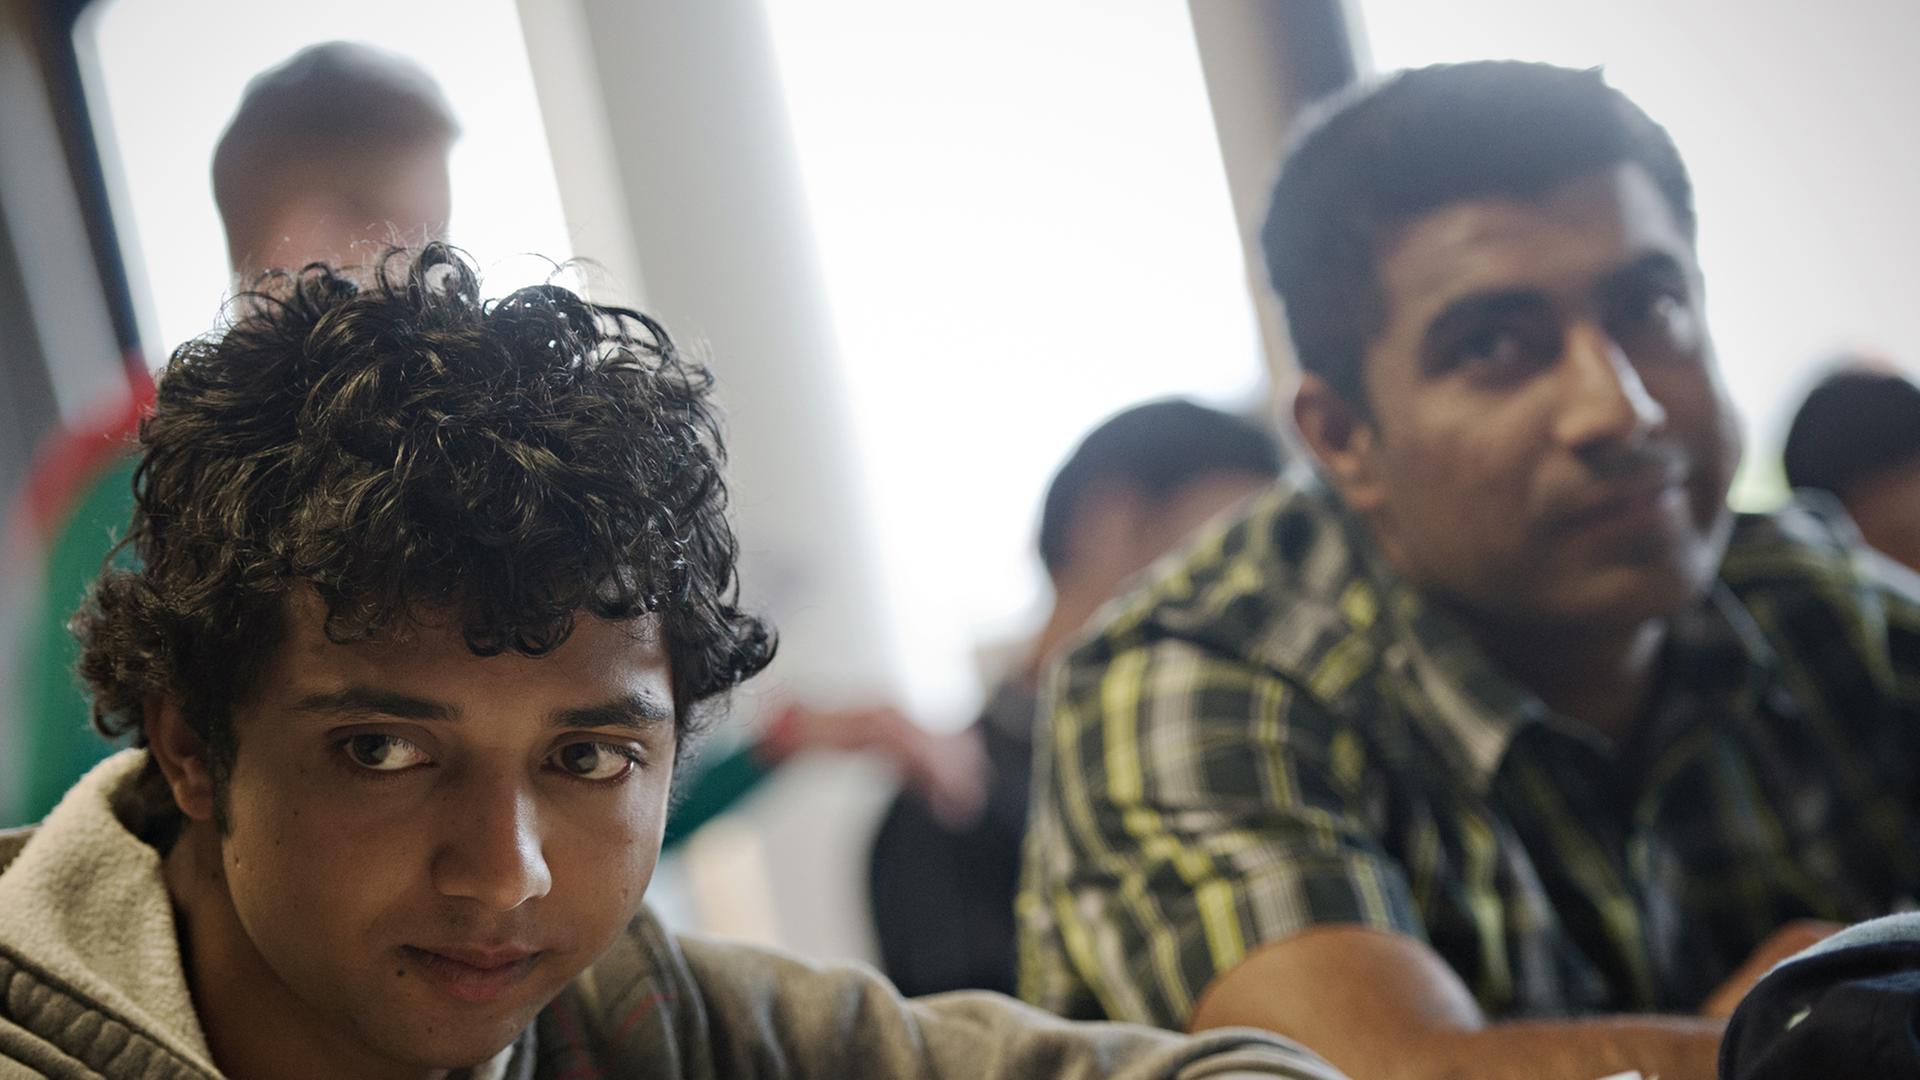 Die pakistanischen Schüler Ali Kamran (l) und Ali Rafagat nehmen am 13.05.2014 im Berufsschulzentrum in Miesbach (Bayern) am Unterricht teil. Zwei Jahre lernen hier Flüchtlinge aus der ganzen Welt gemeinsam.